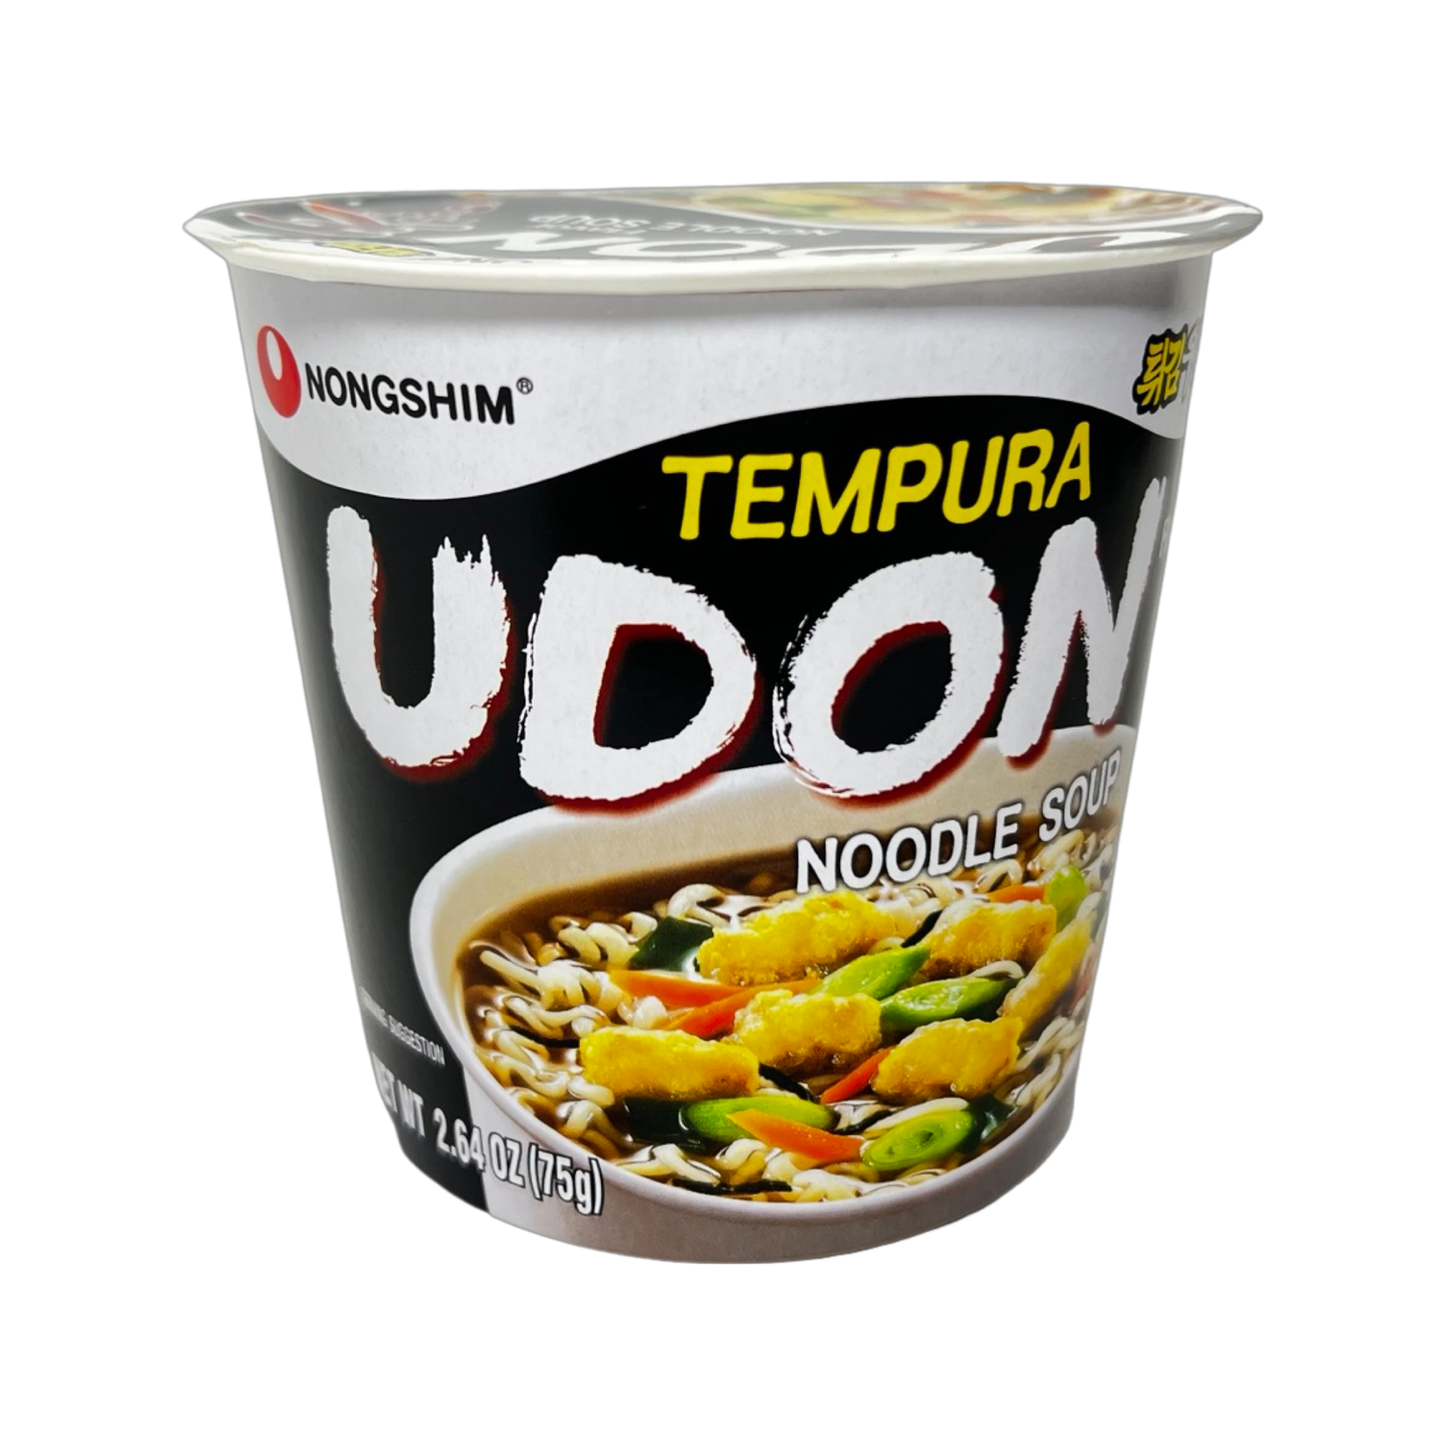 Nongshim Tempura Udon Noodle Soup 75g